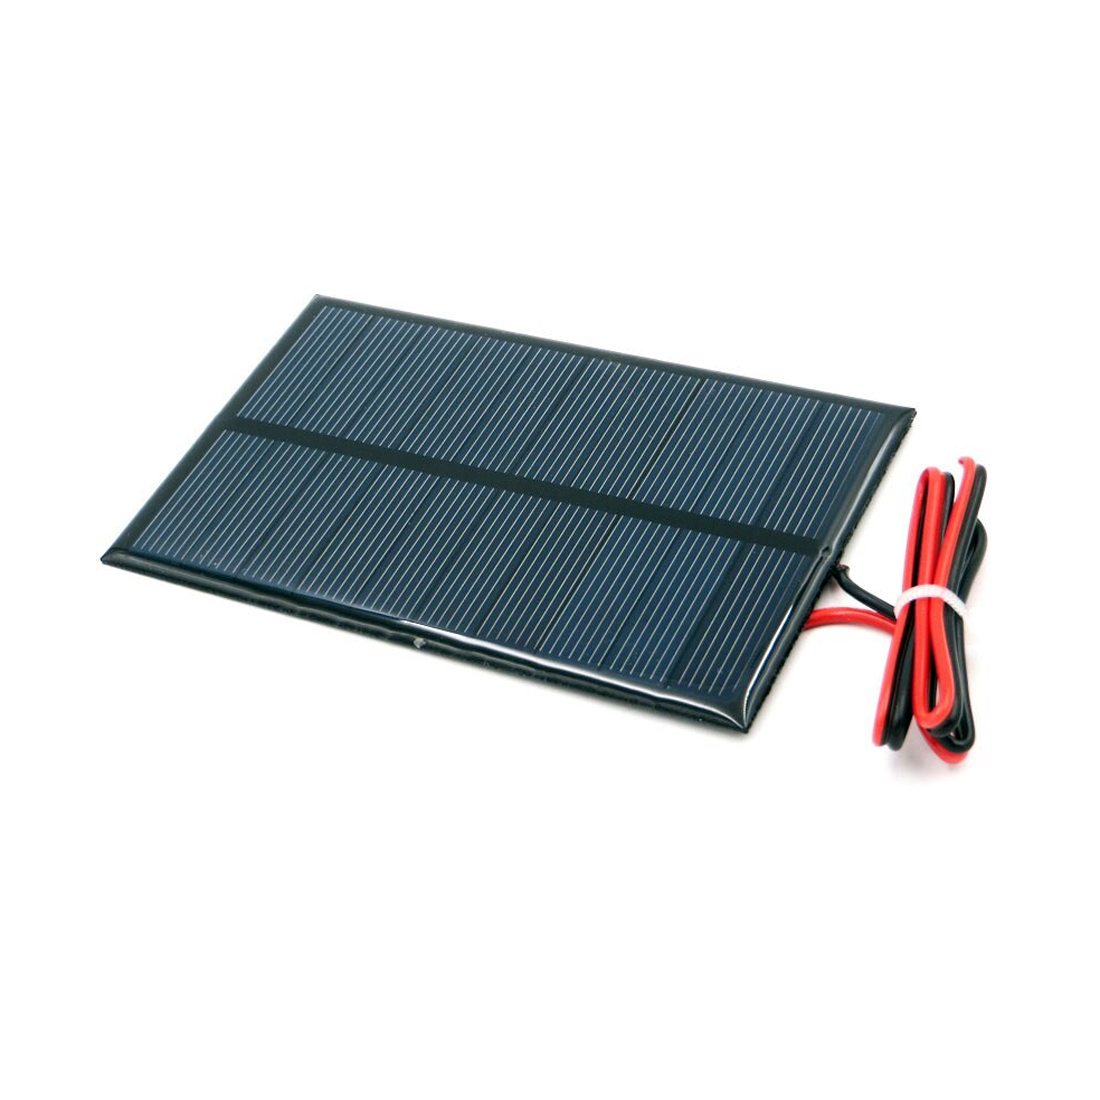 Hobby Small Solar Panel 5v 250mA Mr Positive NZ